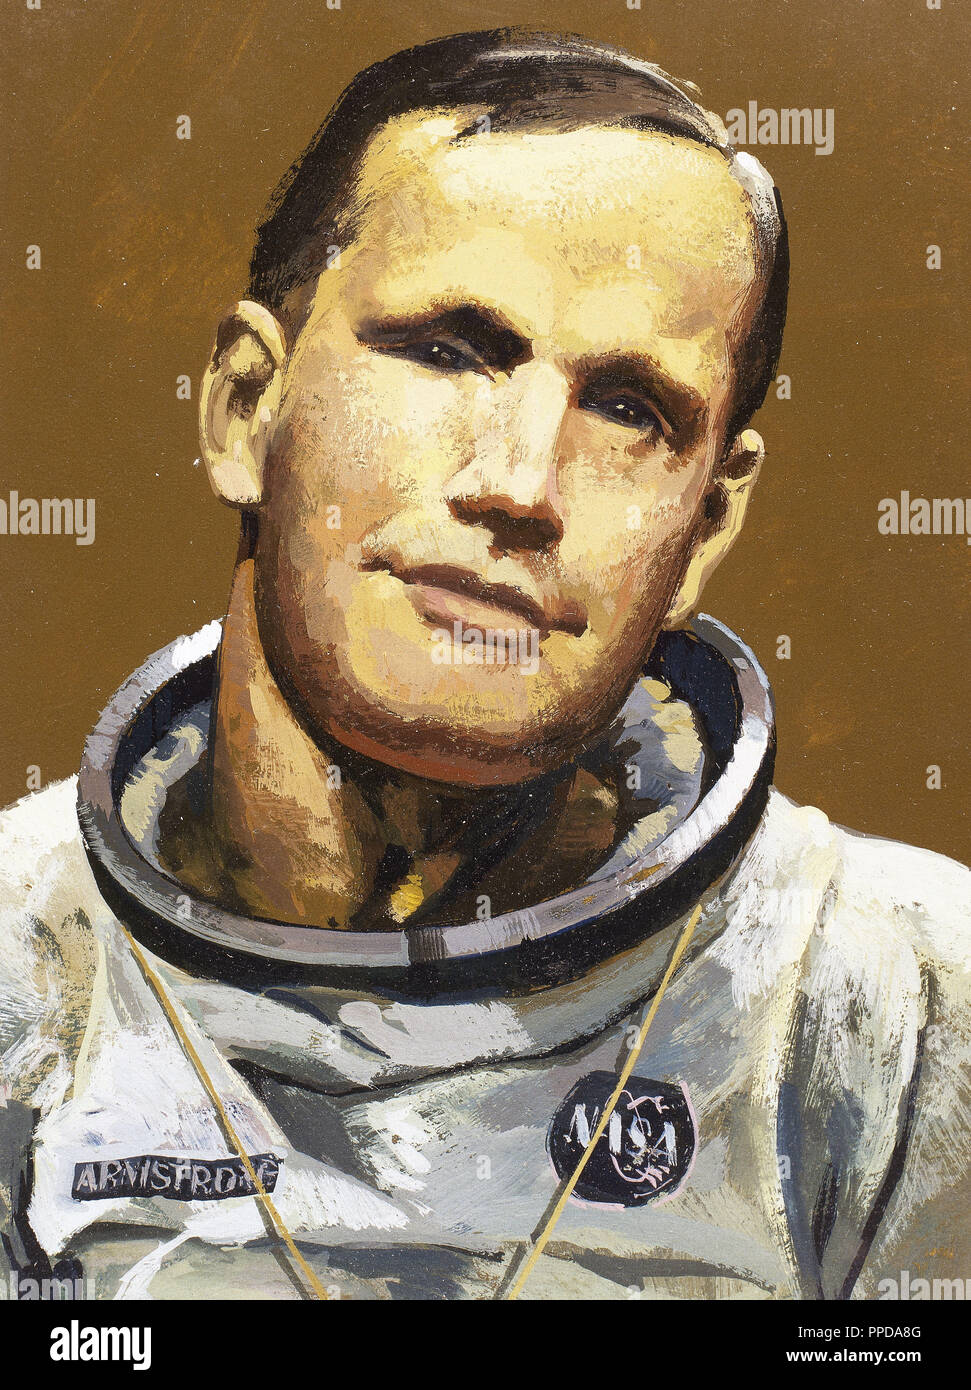 Armstrong, Neil (1930). L'astronaute américain. Il a participé en tant que commandant dans la mission lunaire Apollo '11' et a été le premier homme qui a marché sur la lune (20-6-1969). Banque D'Images